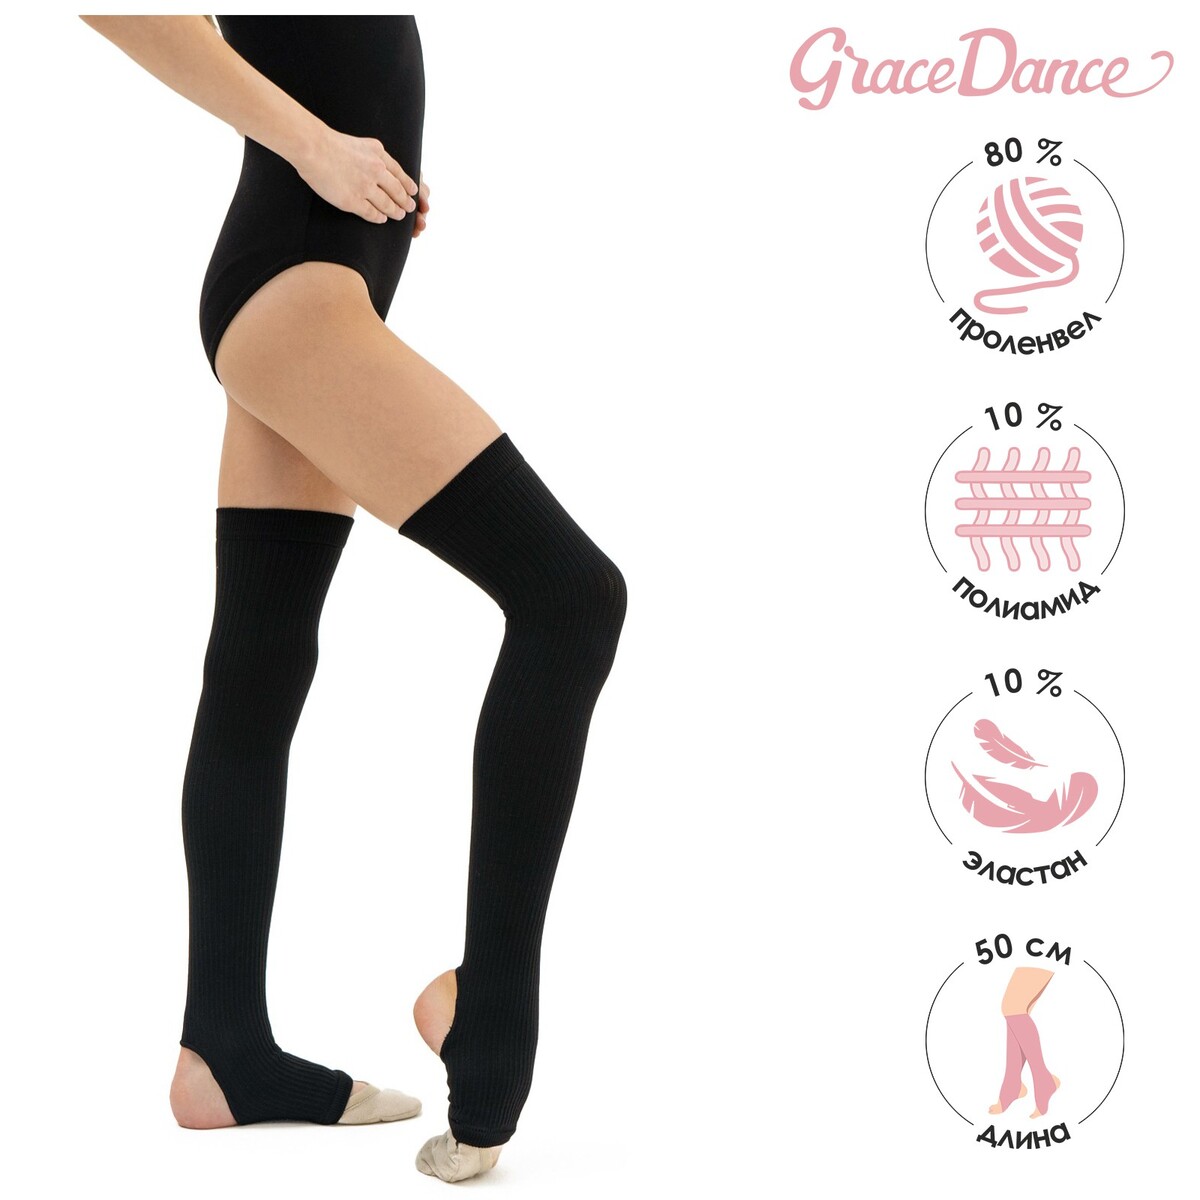 Гетры для танцев grace dance №4, длина 50 см, цвет черный гетры для танцев grace dance 5 длина 50 см бирюзовый